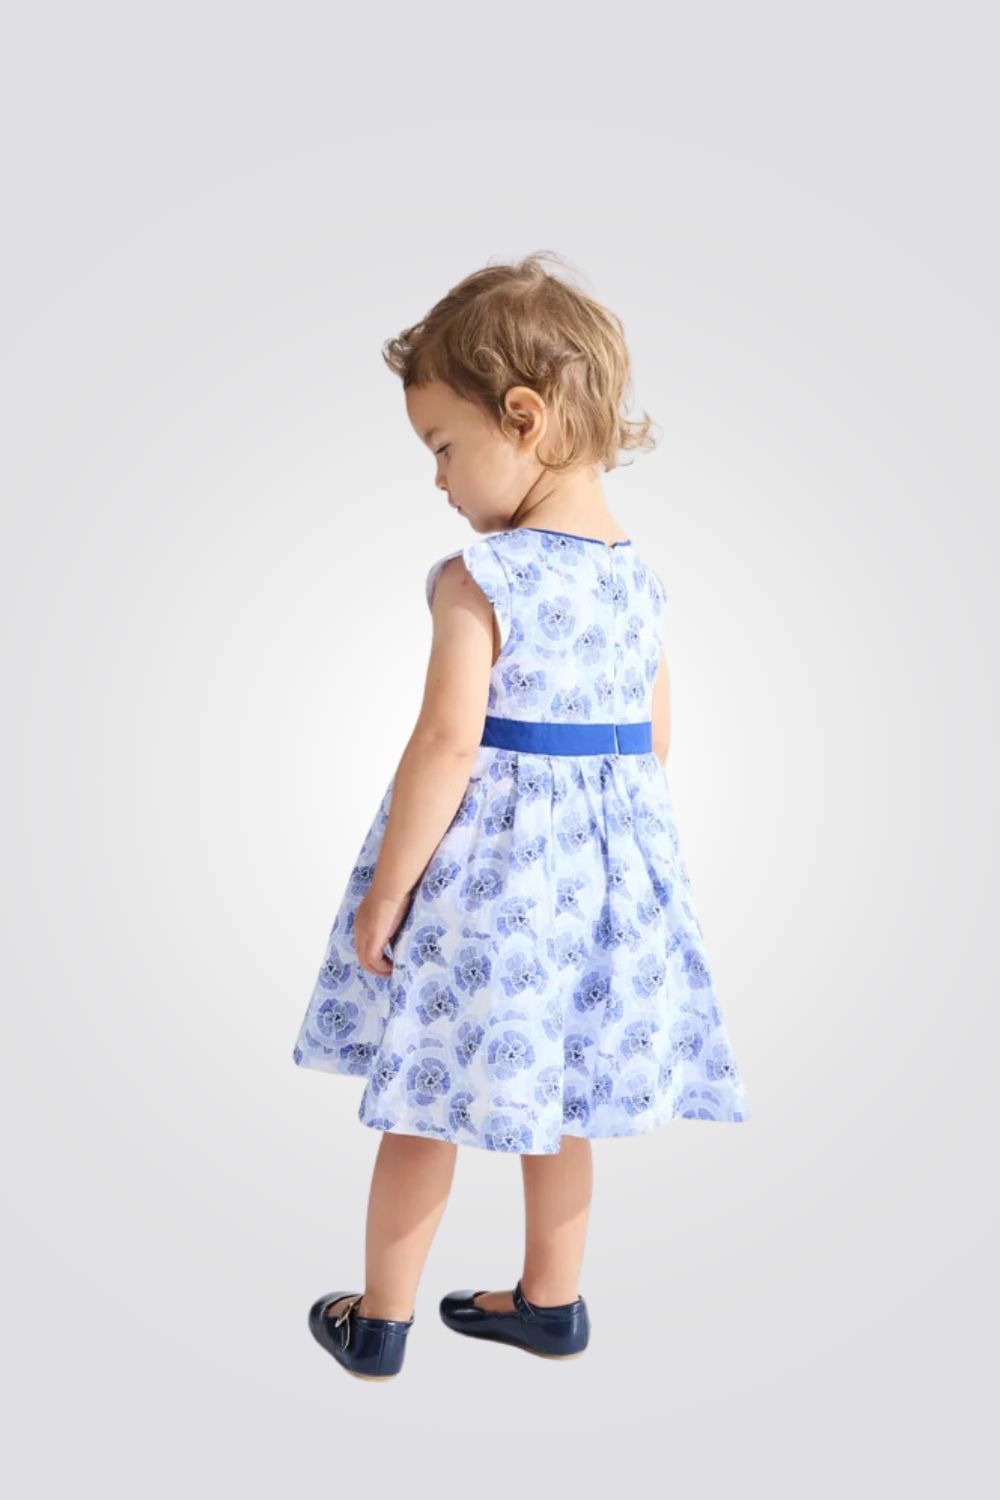 שמלה פרחונית בצבע כחול לתינוקות